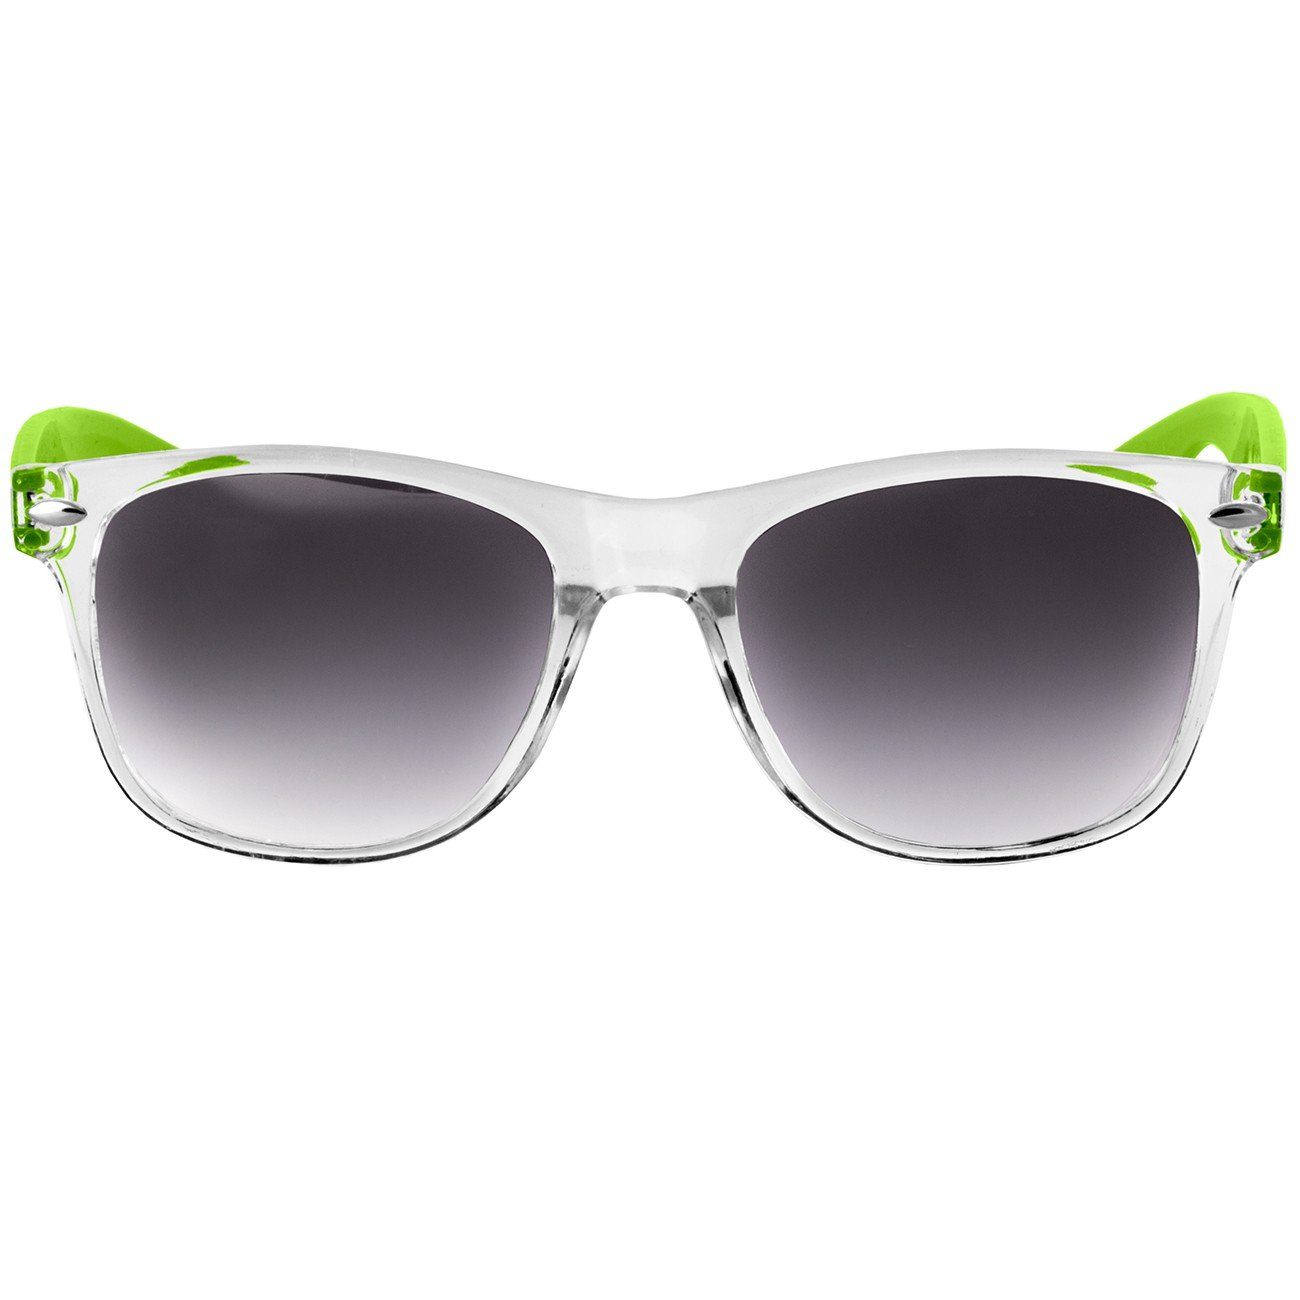 schwarz Sonnenbrille Damen getönt hellgrün Caspar / SG017 RETRO Designbrille